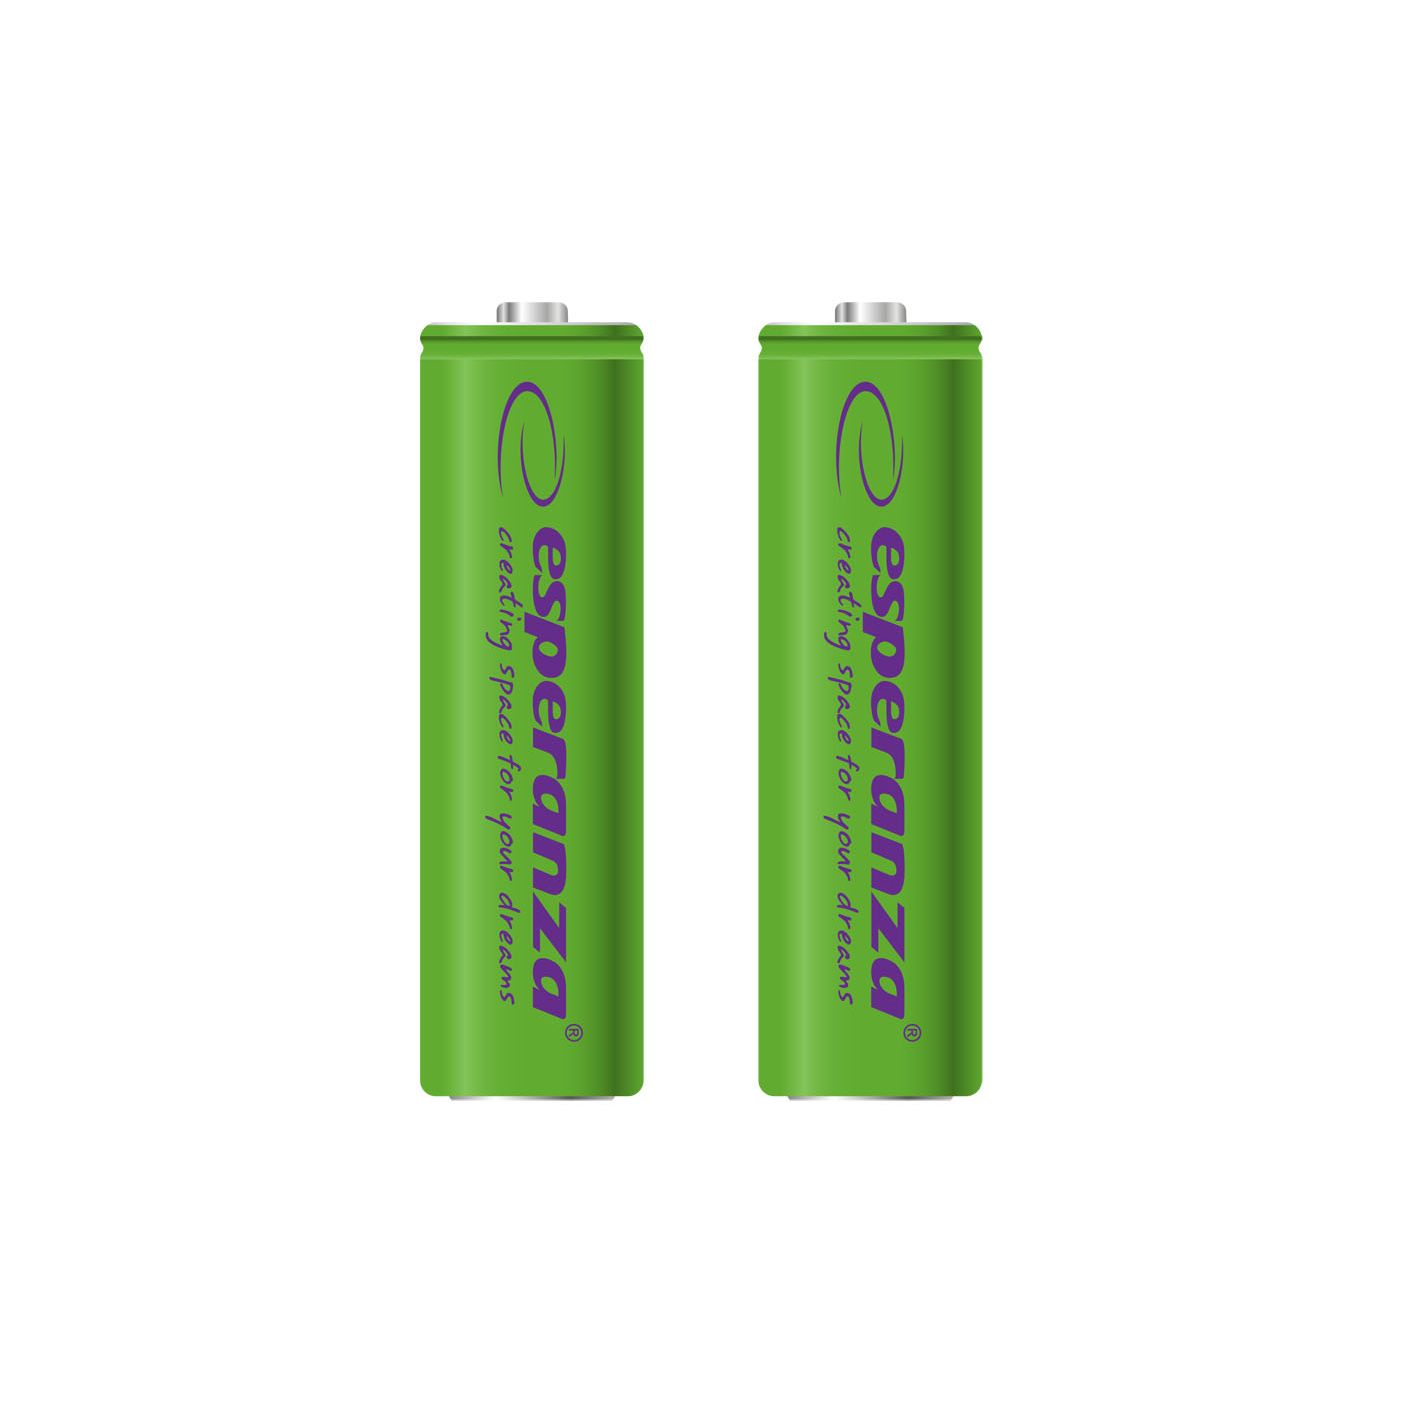 Uppladdbara batterier Esperanza Ni-MH AA 2000mAh 2 st, grön